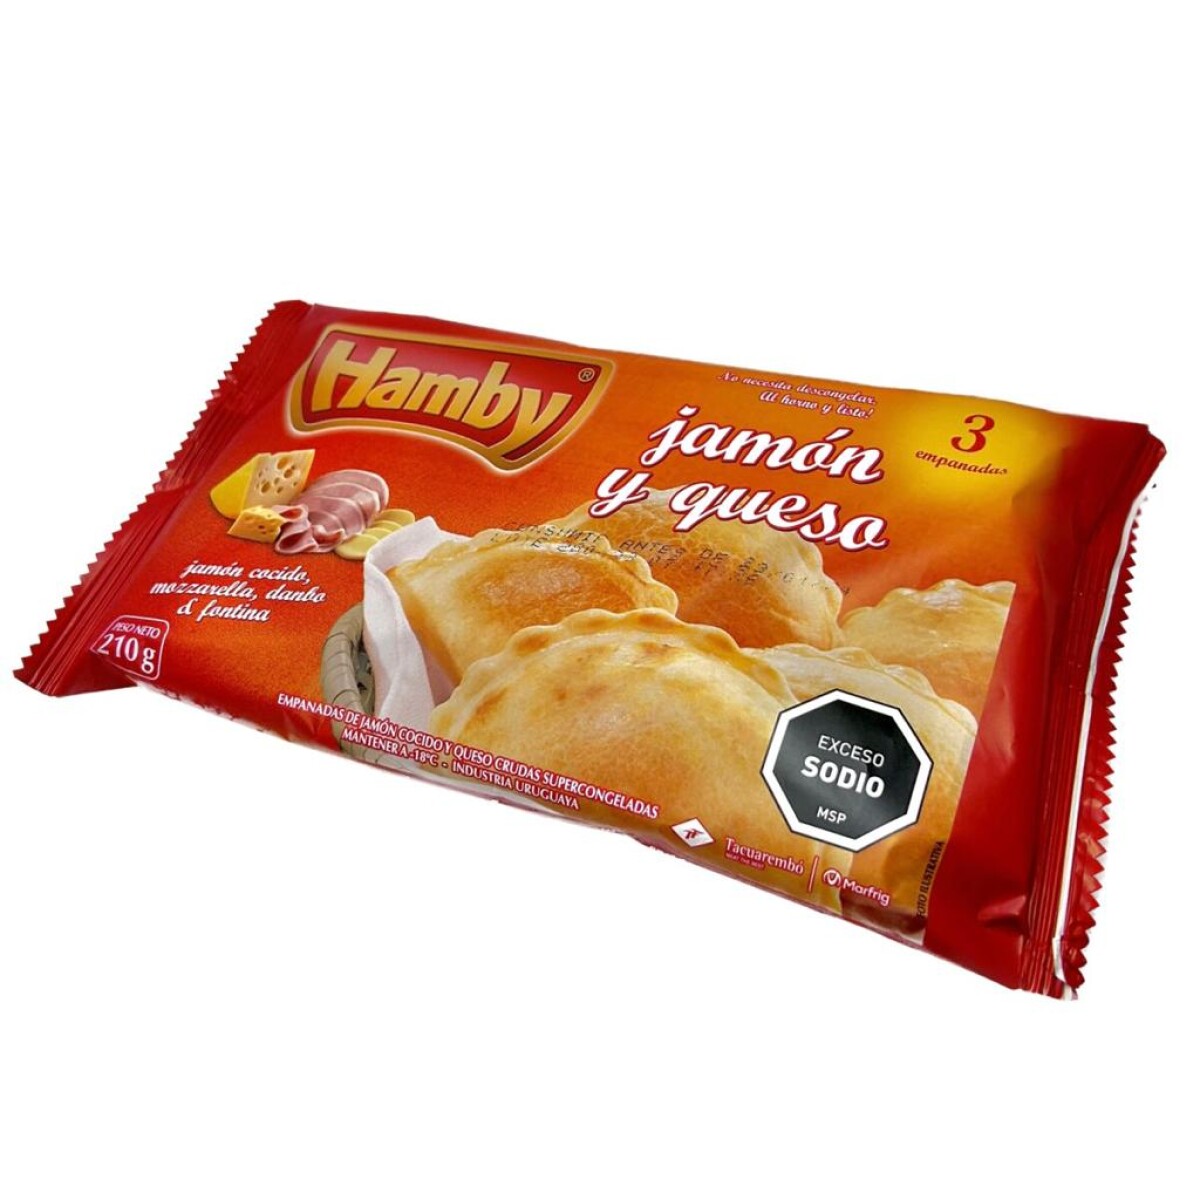 Empanadas Hamby de Jamón y Queso x3 